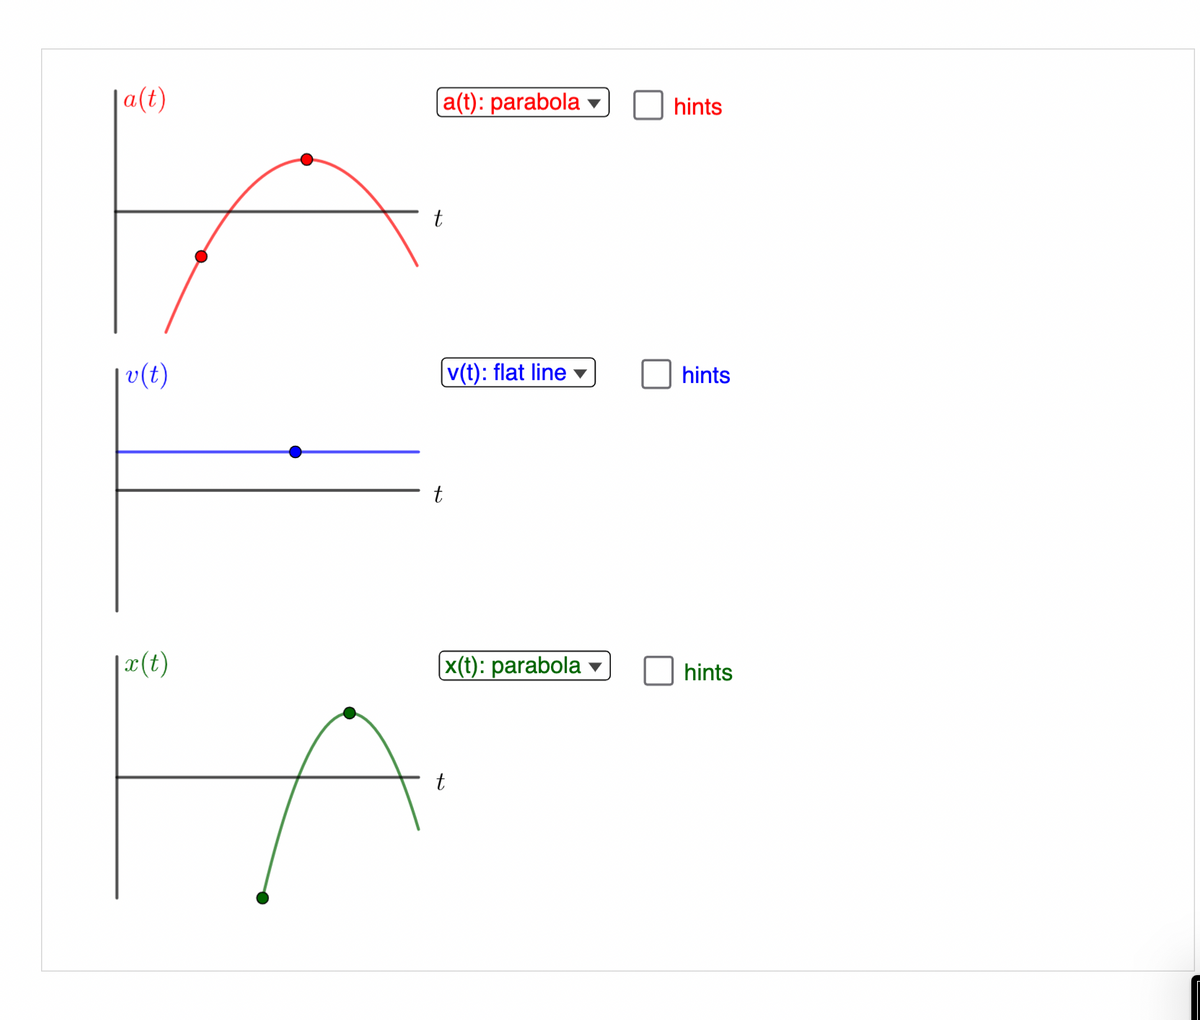 a(t)
|v(t)
|x(t)
a(t): parabola
t
t
v(t): flat line
(x(t): parabola
t
hints
hints
hints